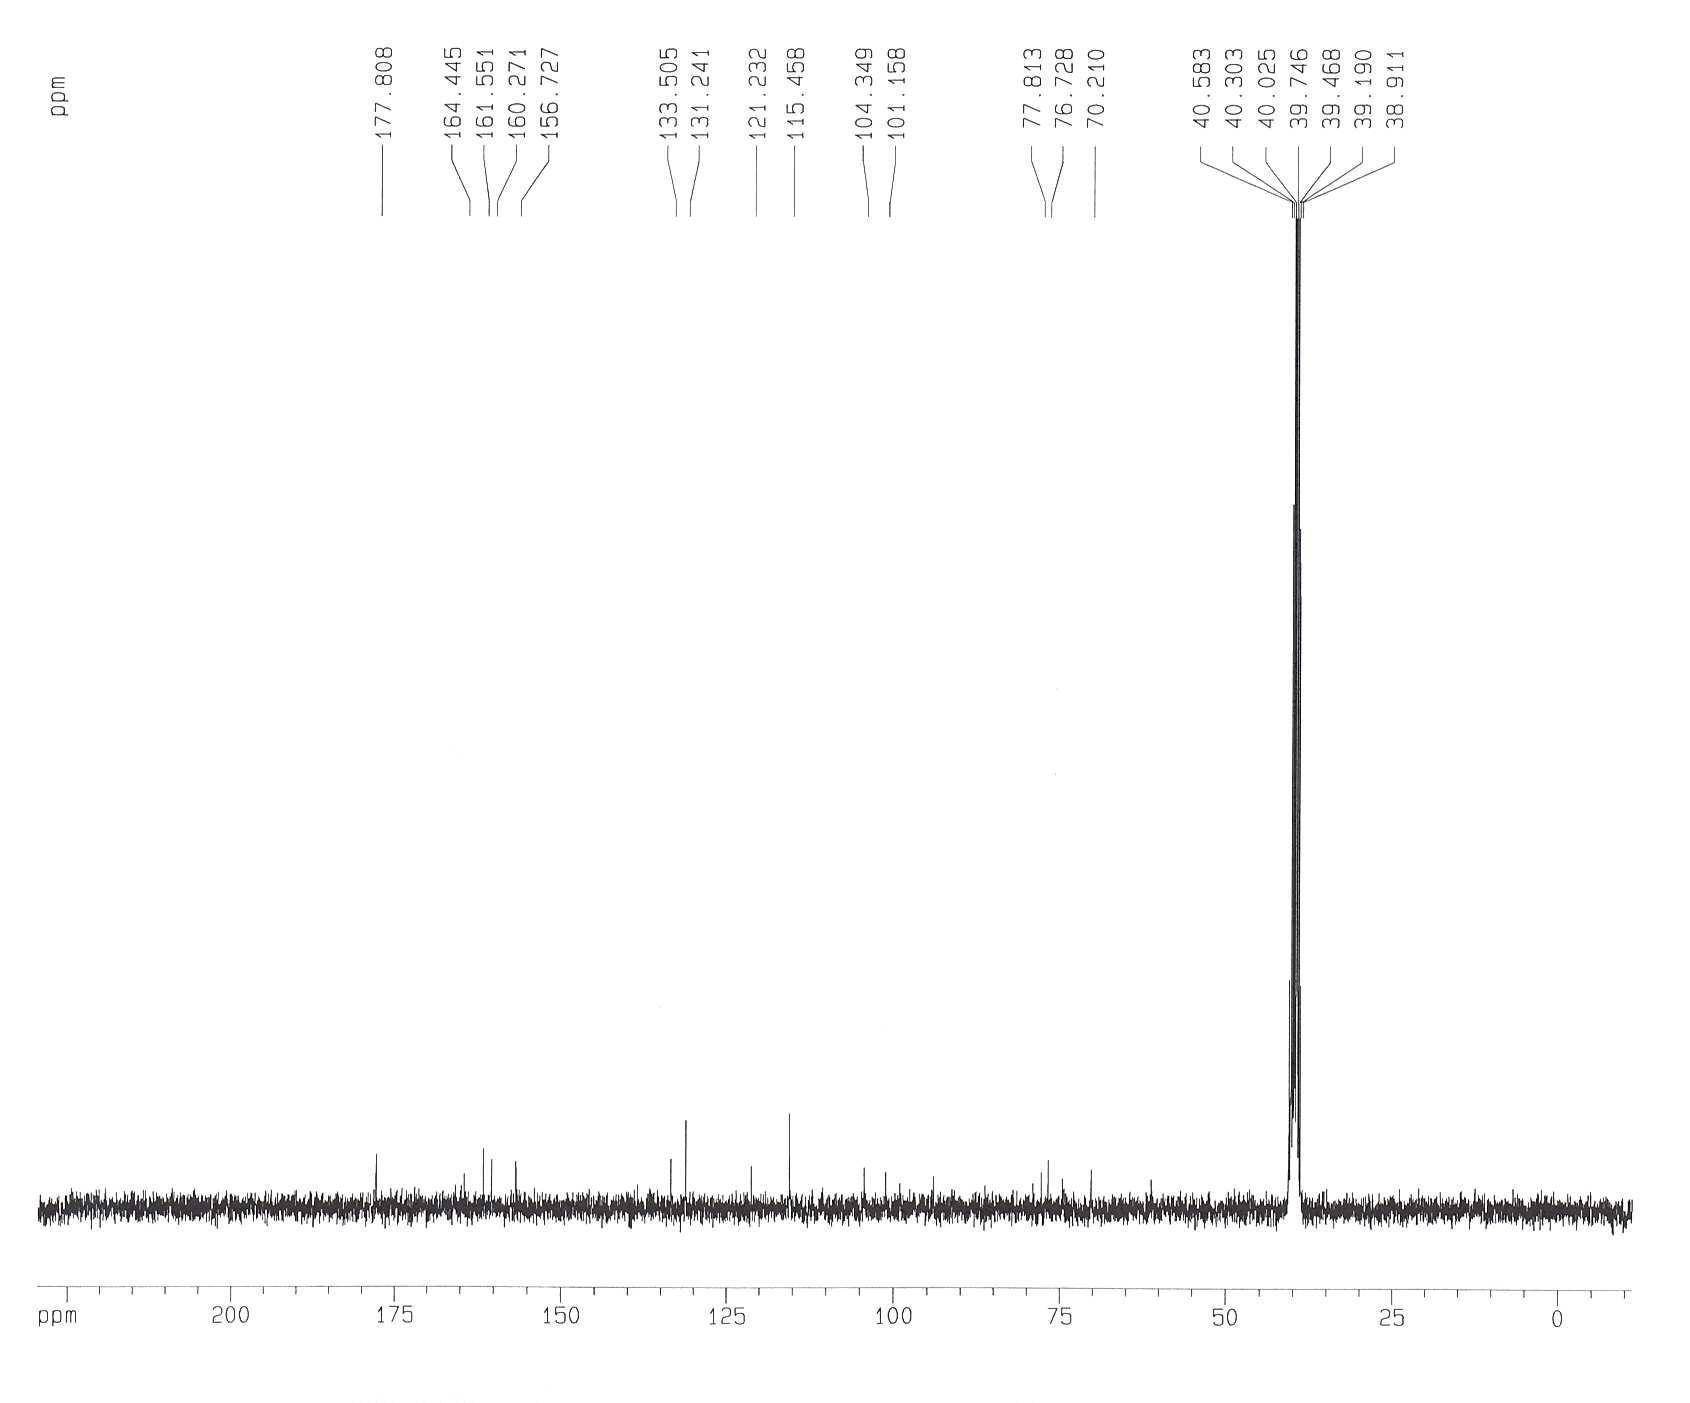 1H-NMR Spectrum of Compound 3